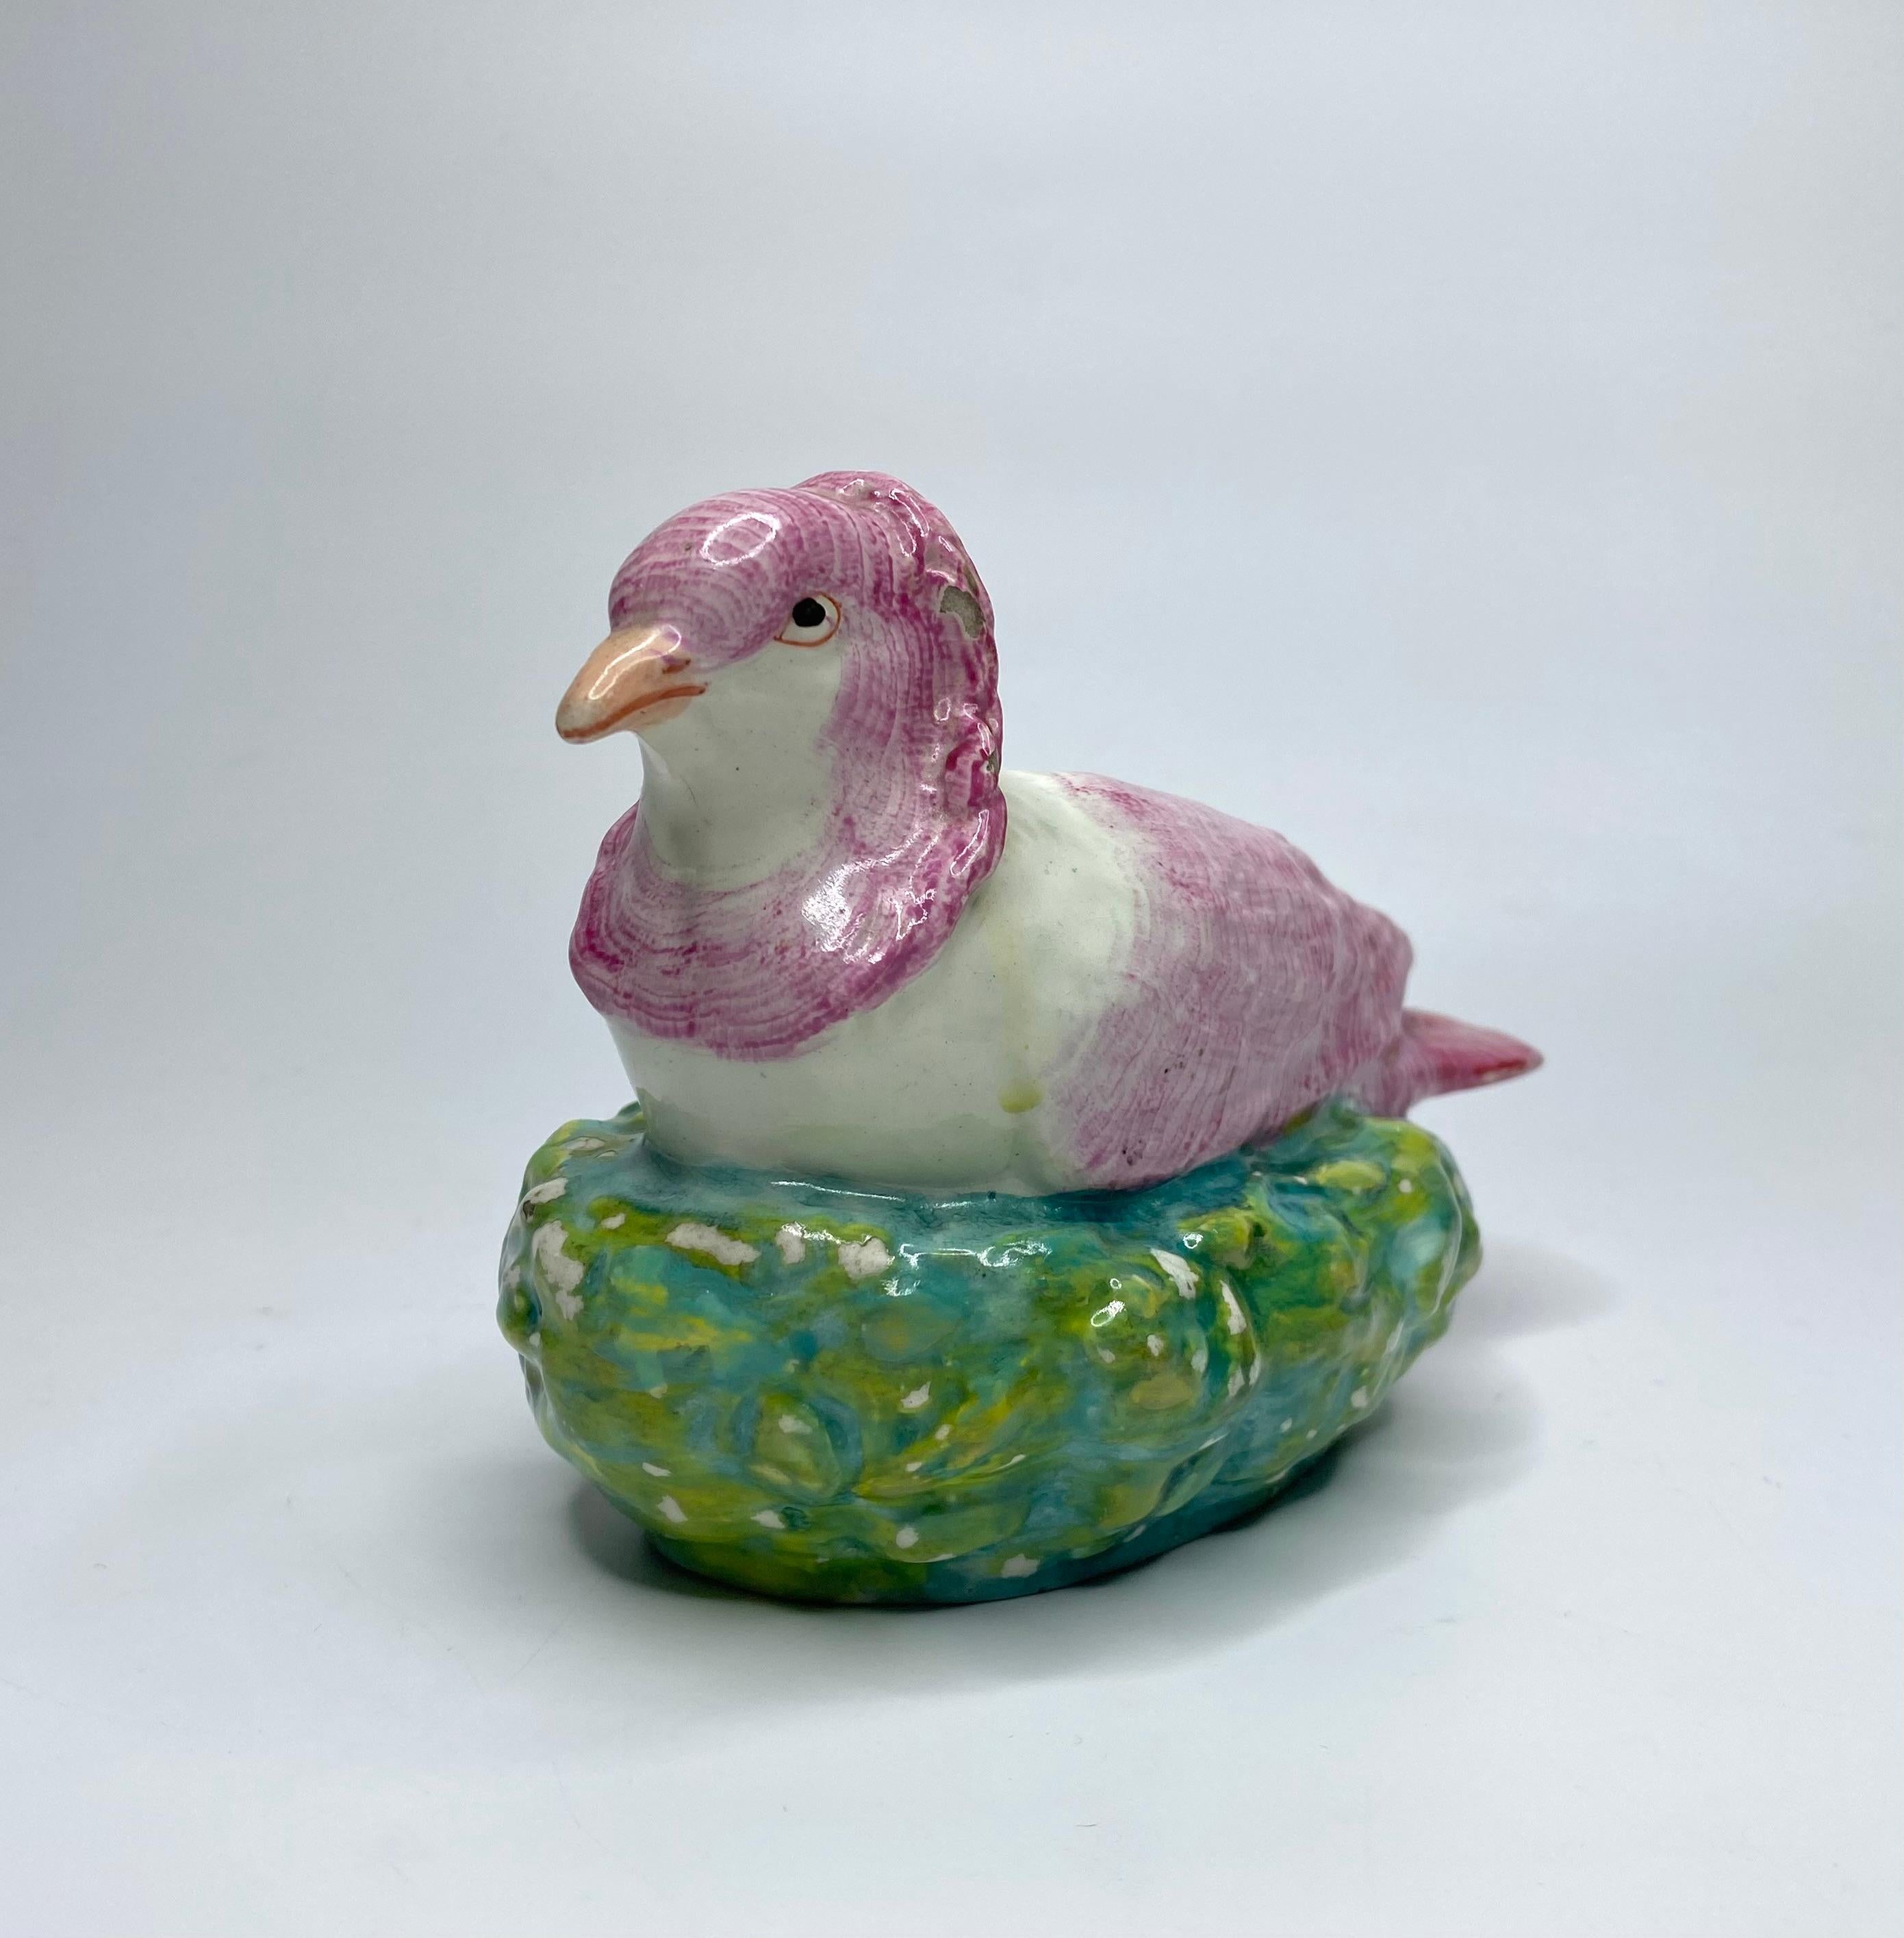 Staffordshire-Keramikfigur einer Taube, Enoch Wood, um 1820. Gut modelliert als Taube, auf ihrem Nest. Die Federn der Tauben sind gut gezeichnet und in rosa Emaille hervorgehoben. Das Nest ist naturgetreu in grüner, gelber und brauner Emaille